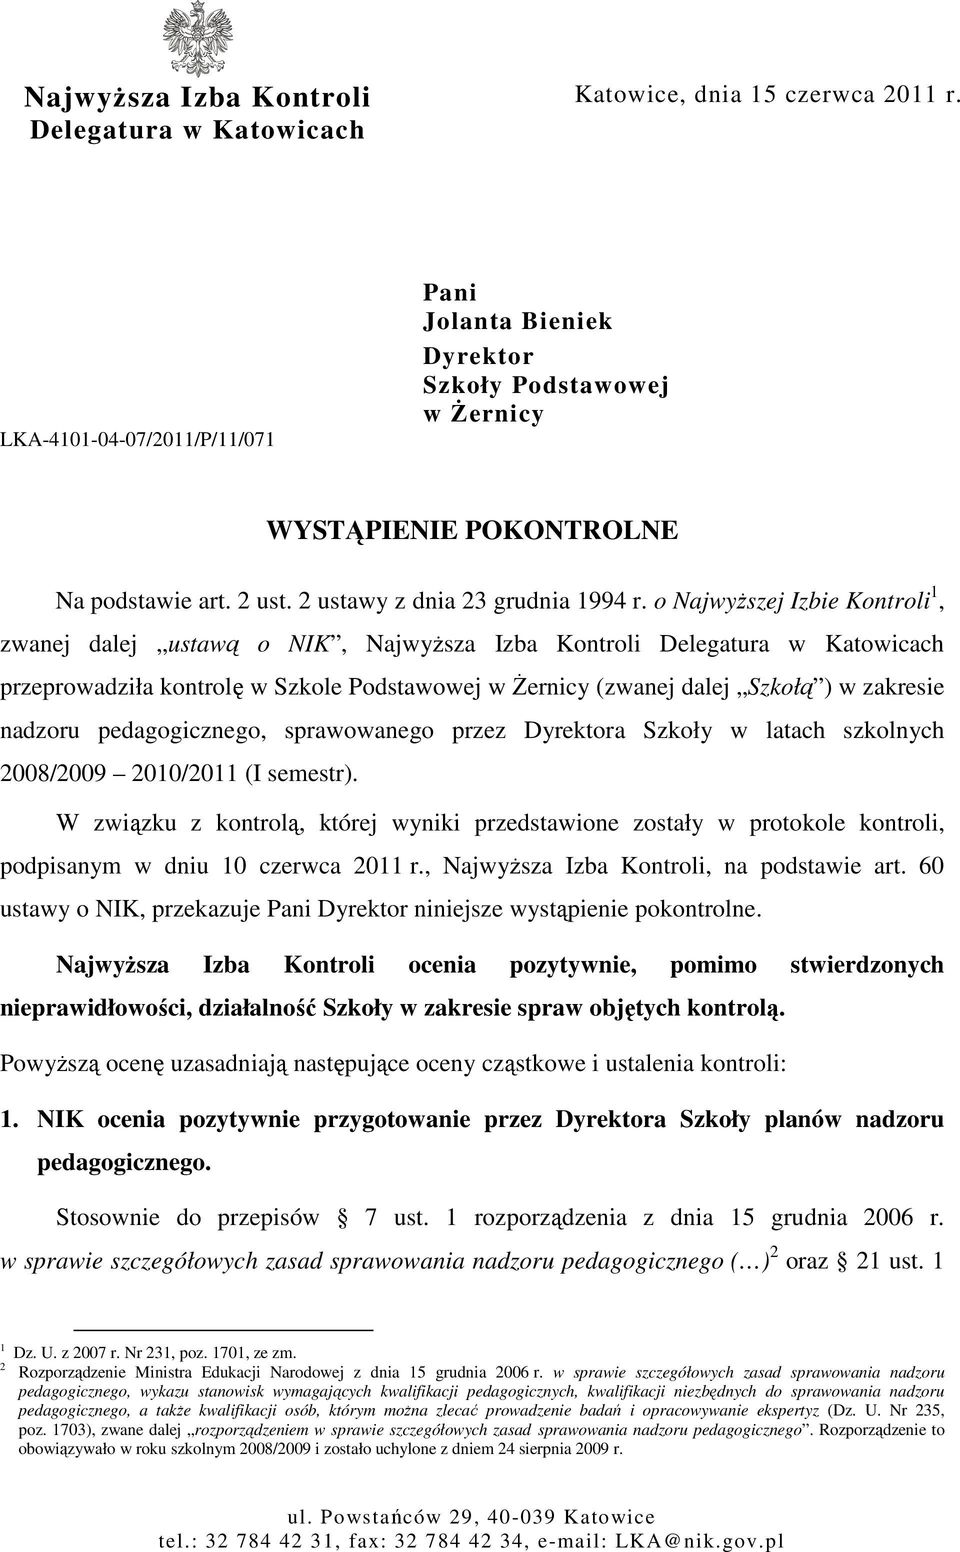 o NajwyŜszej Izbie Kontroli 1, zwanej dalej ustawą o NIK, NajwyŜsza Izba Kontroli Delegatura w Katowicach przeprowadziła kontrolę w Szkole Podstawowej w śernicy (zwanej dalej Szkołą ) w zakresie